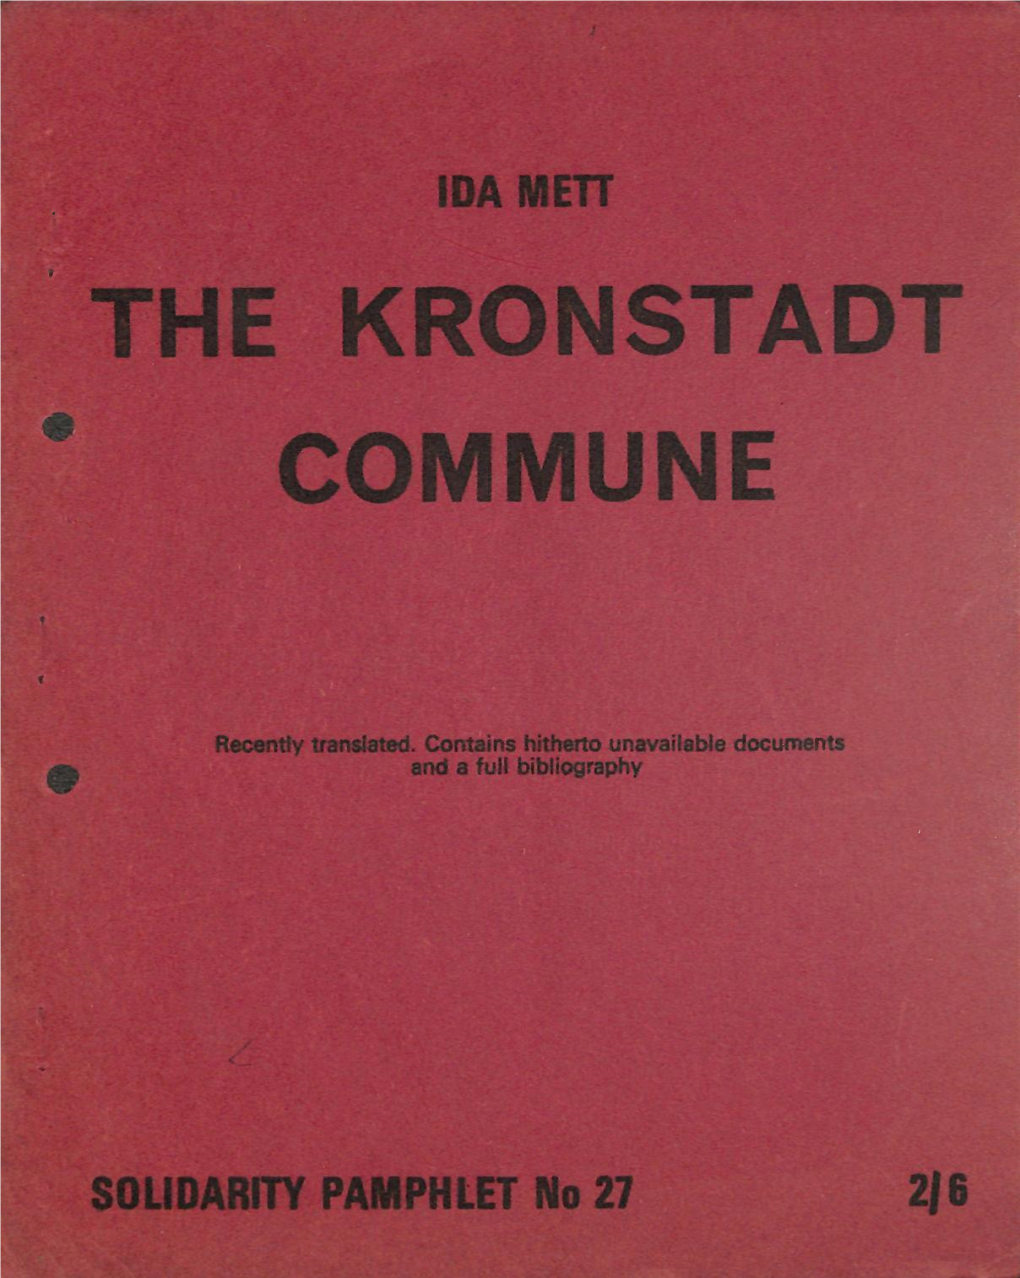 The Kronstadt Commune